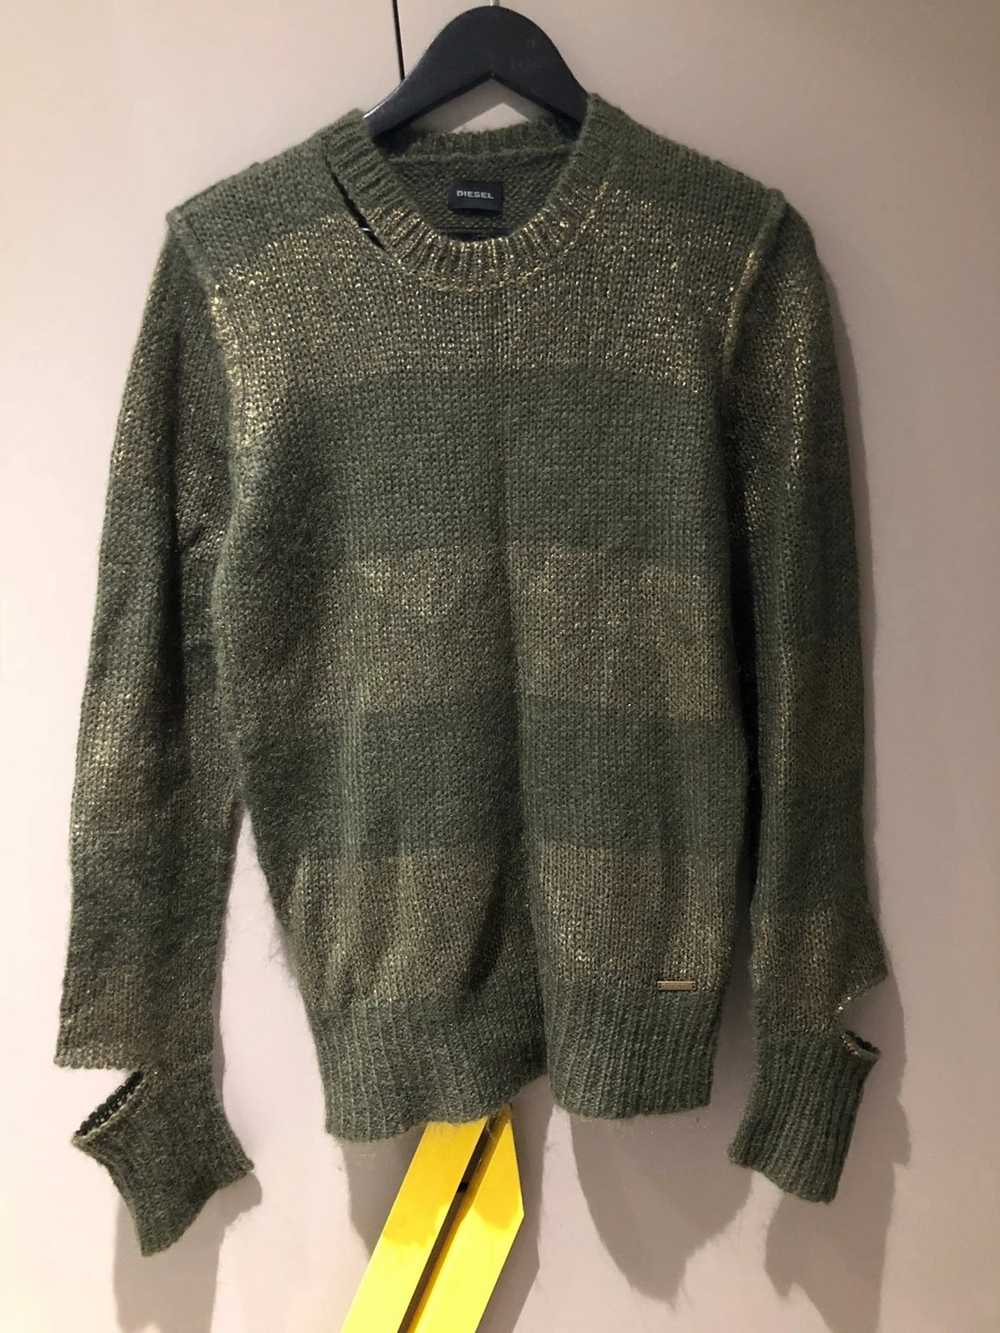 Diesel Distressed Sweater - Gem